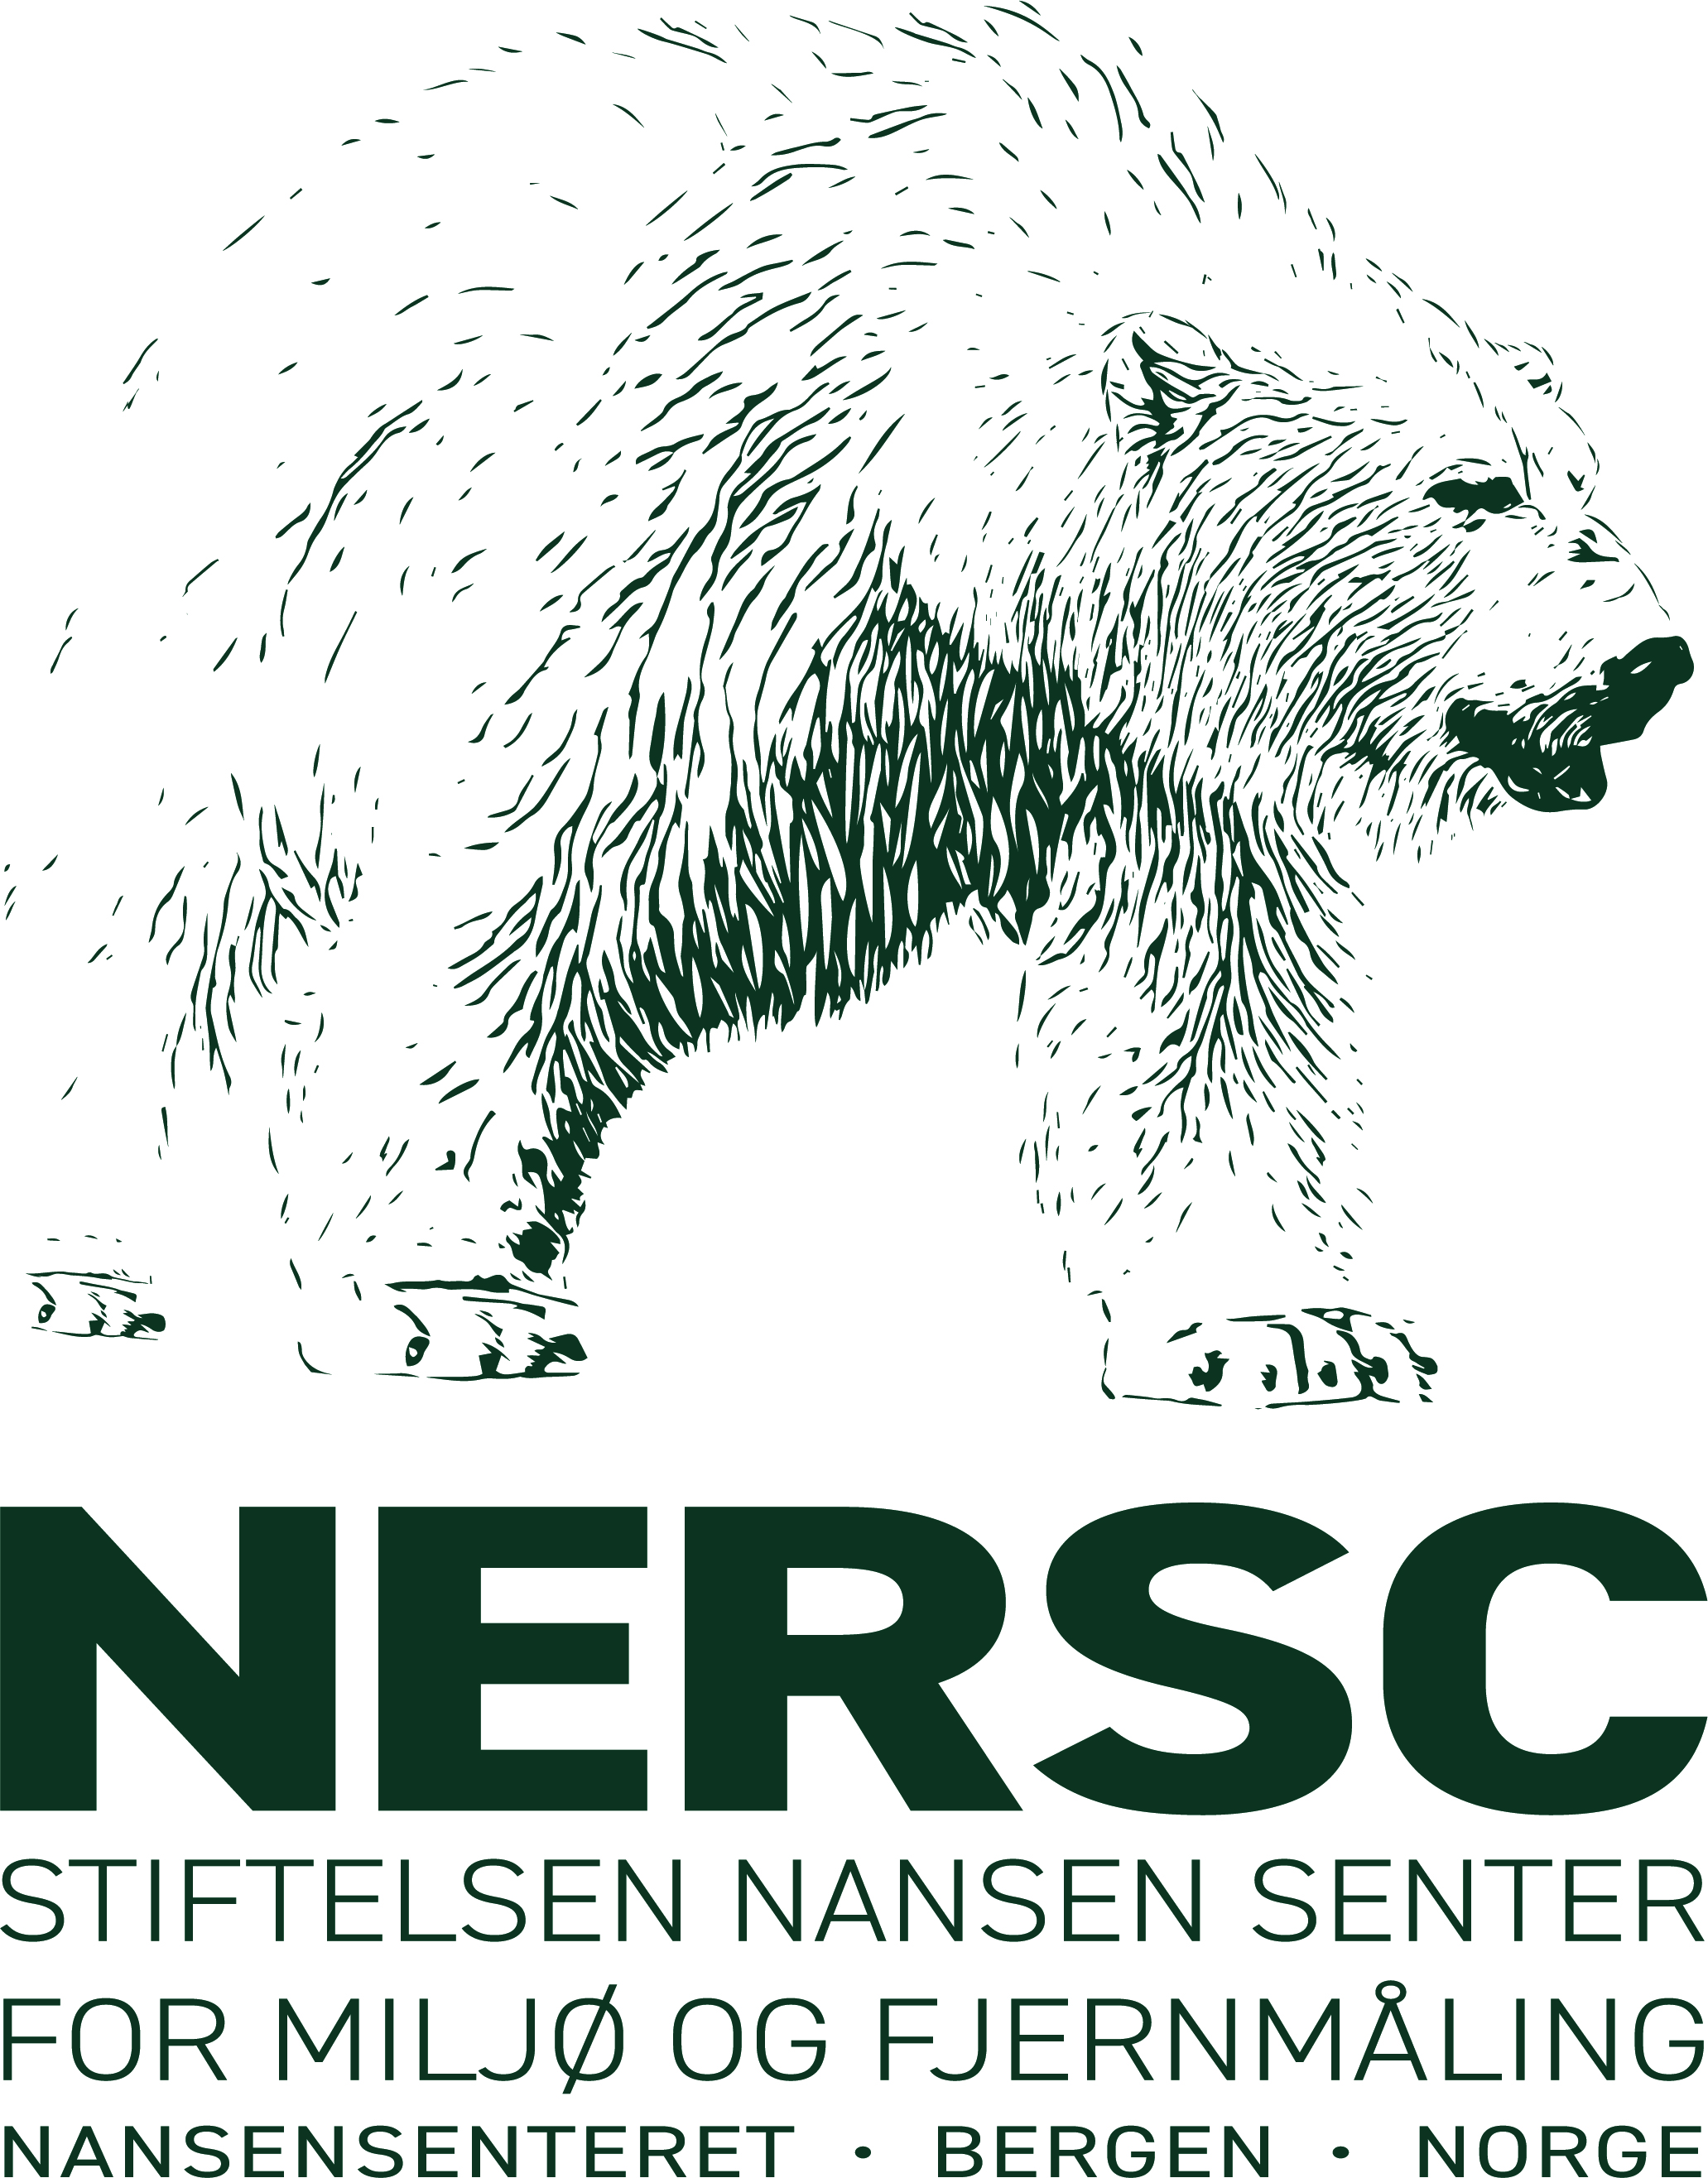 The Nansen Environmental and Remote Sensing Center